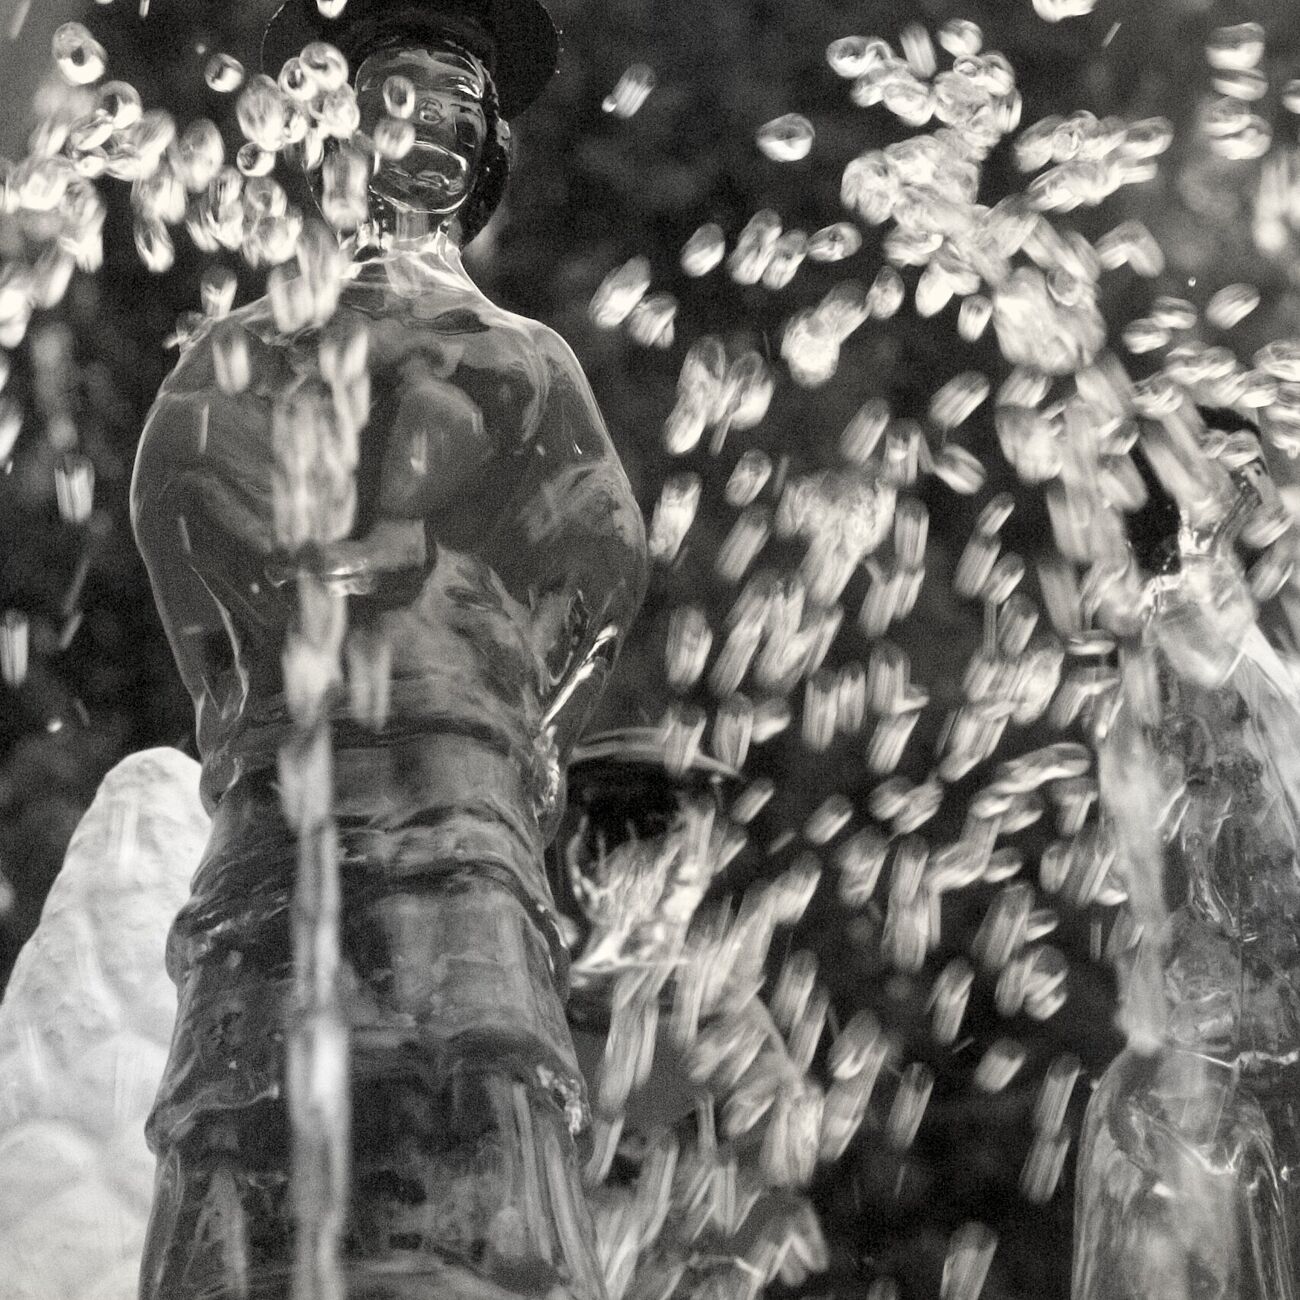 Achat d'une photographie 40 x 40 cm, Sparkling fountain. Ref-459-12 - Denis Olivier Photographie d'Art